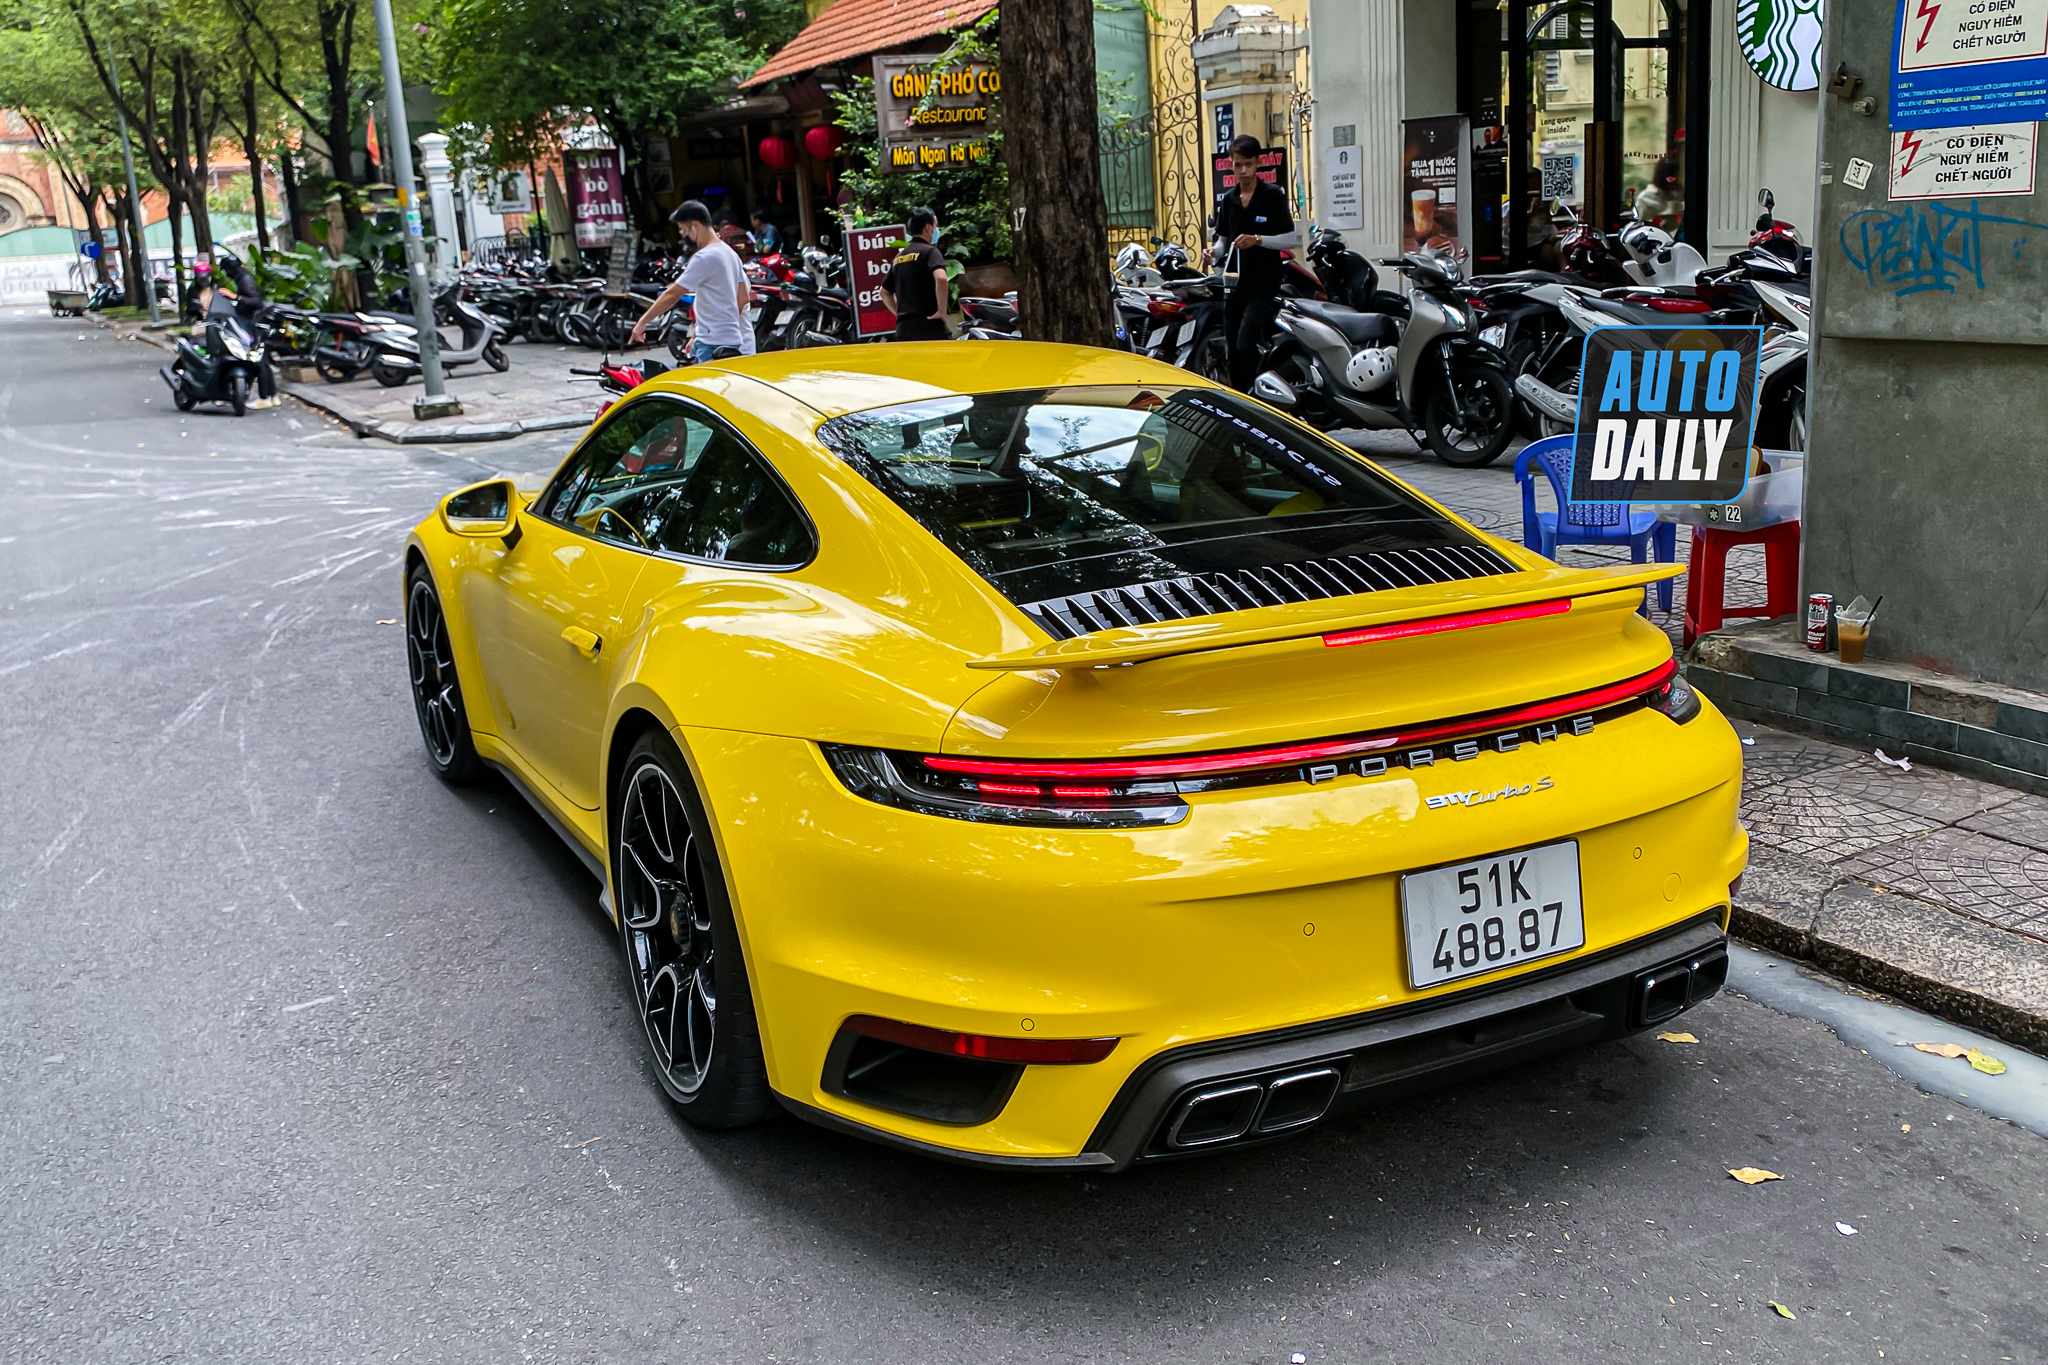 Bắt gặp Porsche 911 Turbo S hơn 17 tỷ màu vàng độc nhất Việt Nam của đại gia Sài Gòn porsche-911-turbo-s-mau-vang-autodaily-4.JPG